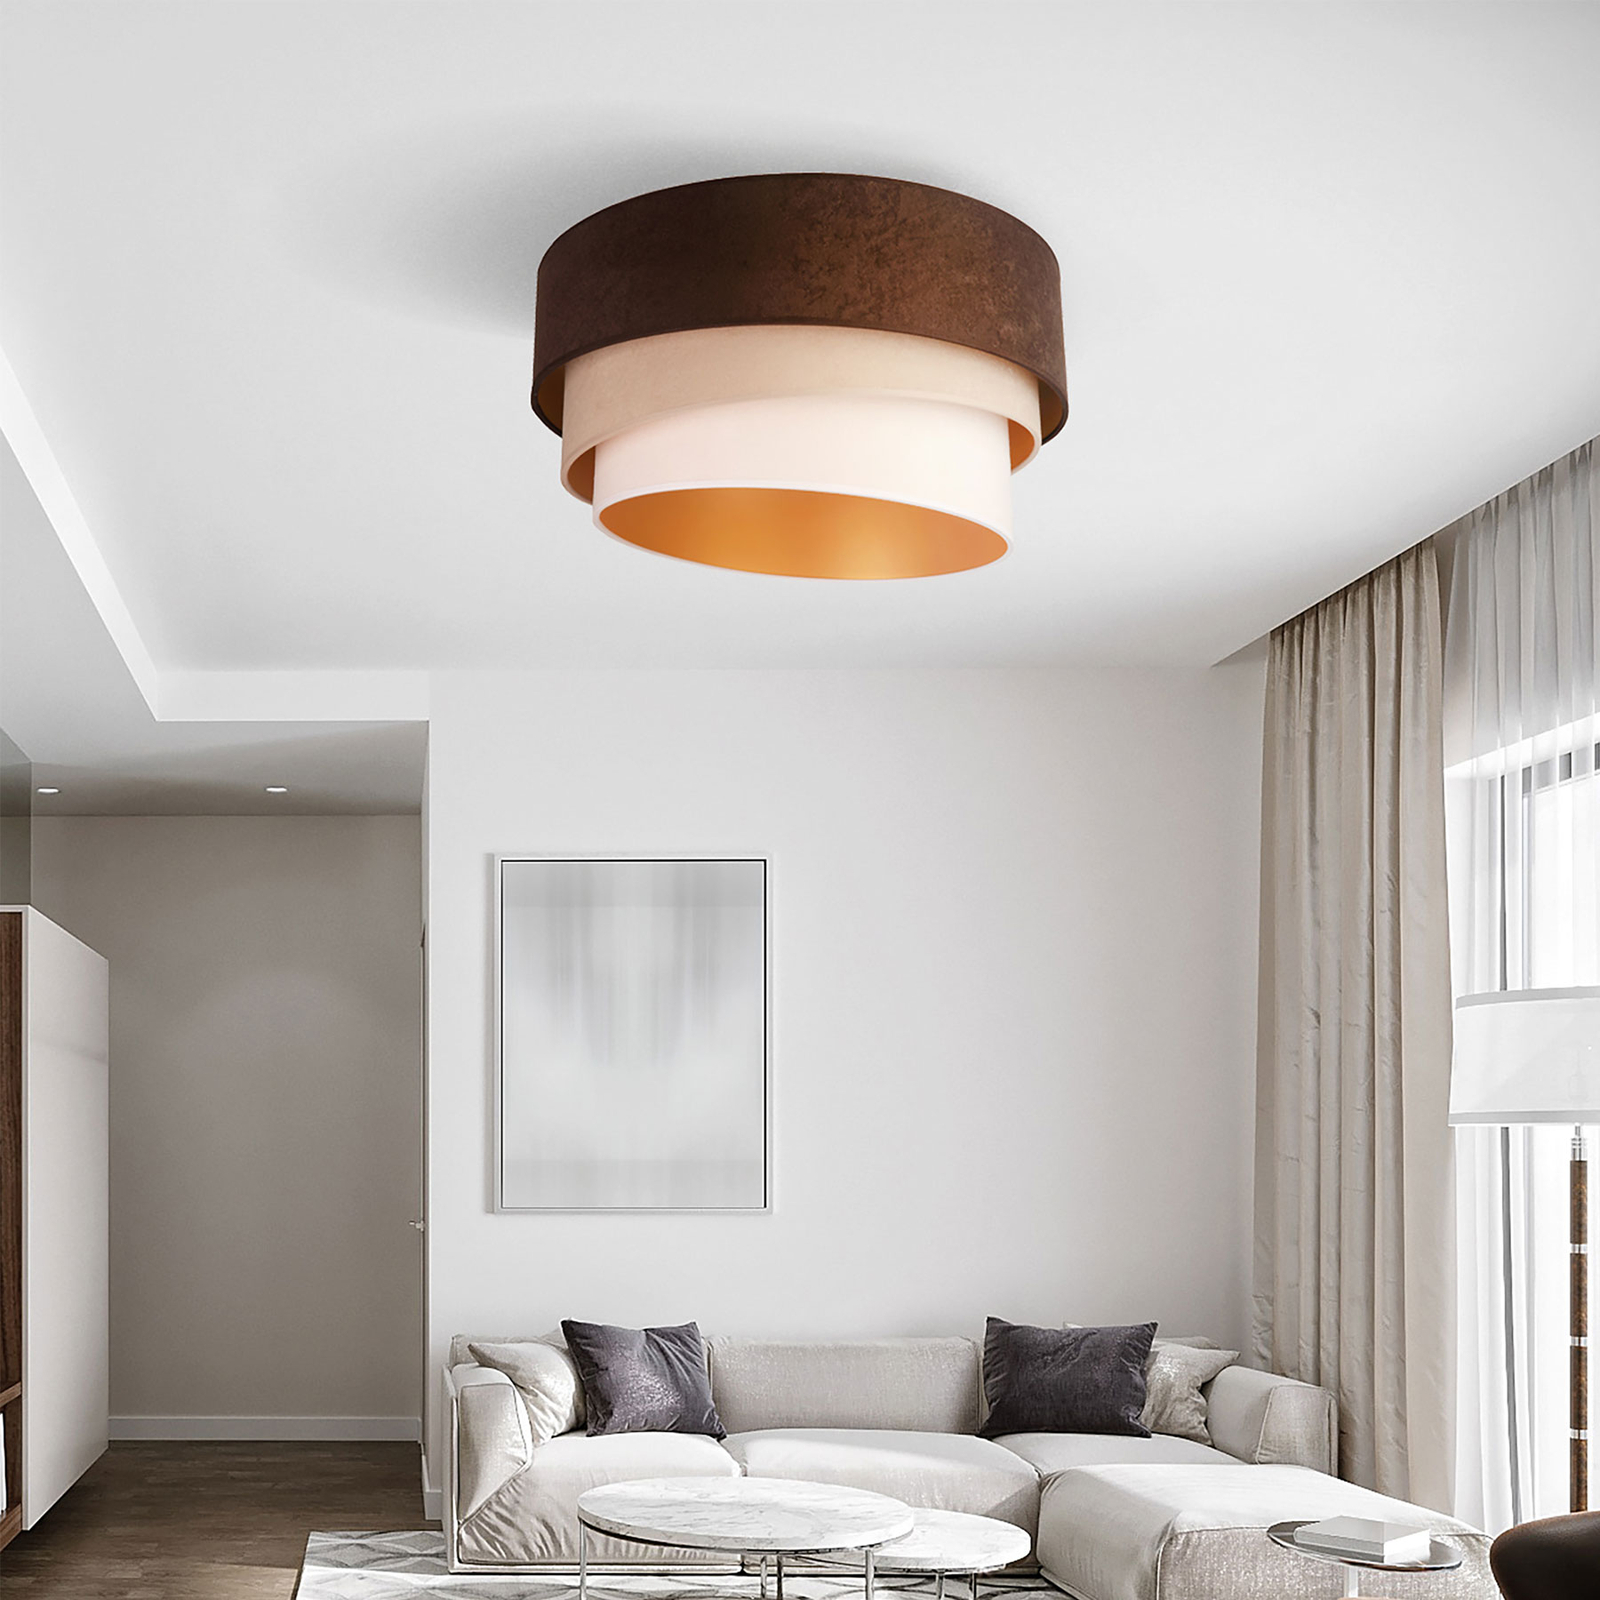 Euluna Devon ceiling brown/beige/ecru/gold Ø 45 cm